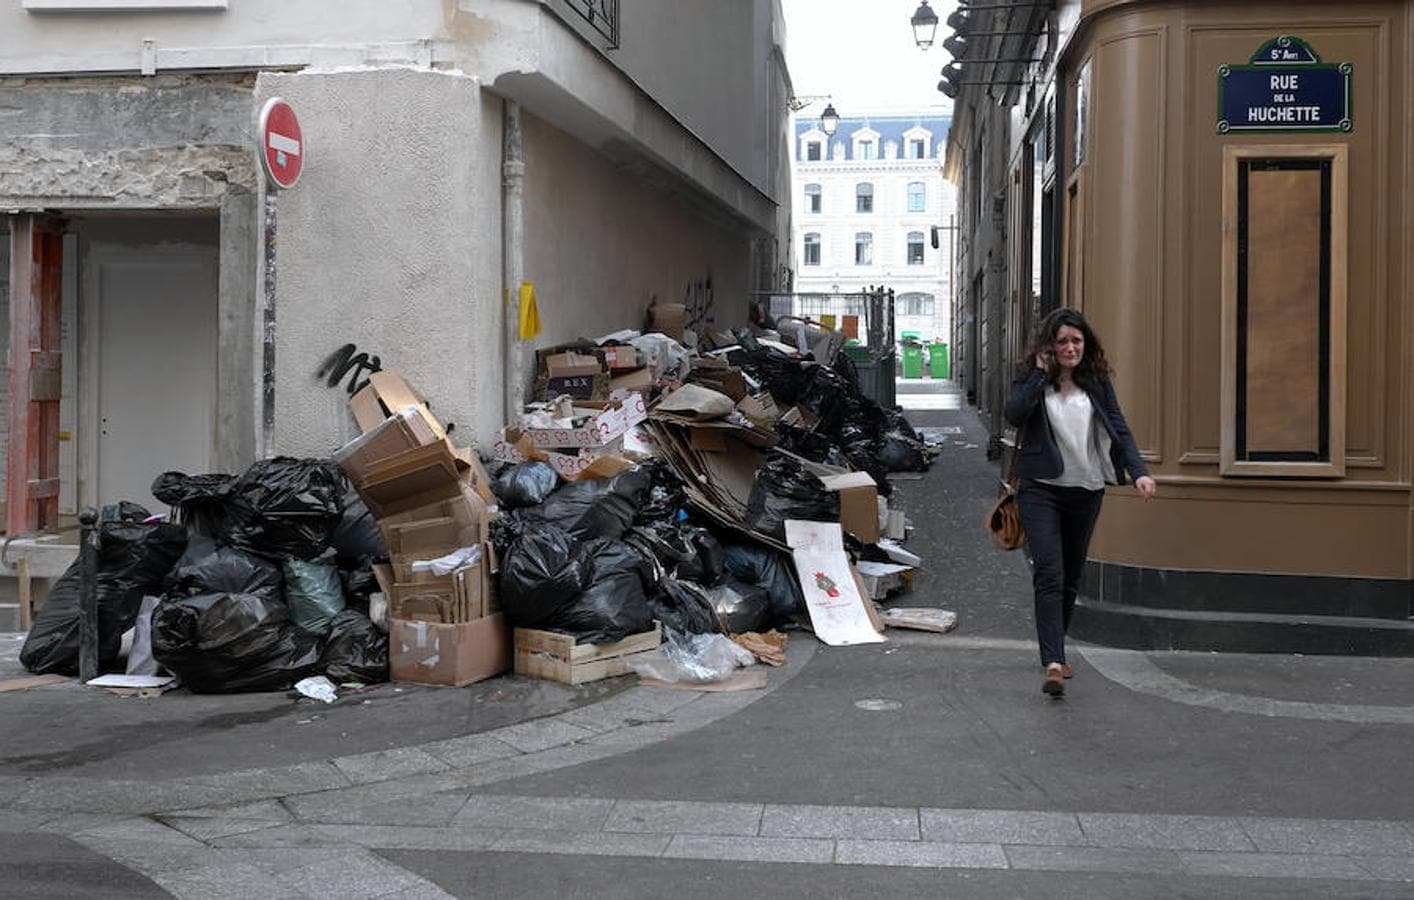 Cartones y bolsas de basura se acumulan en la céntrica «Rue de la Huchette»